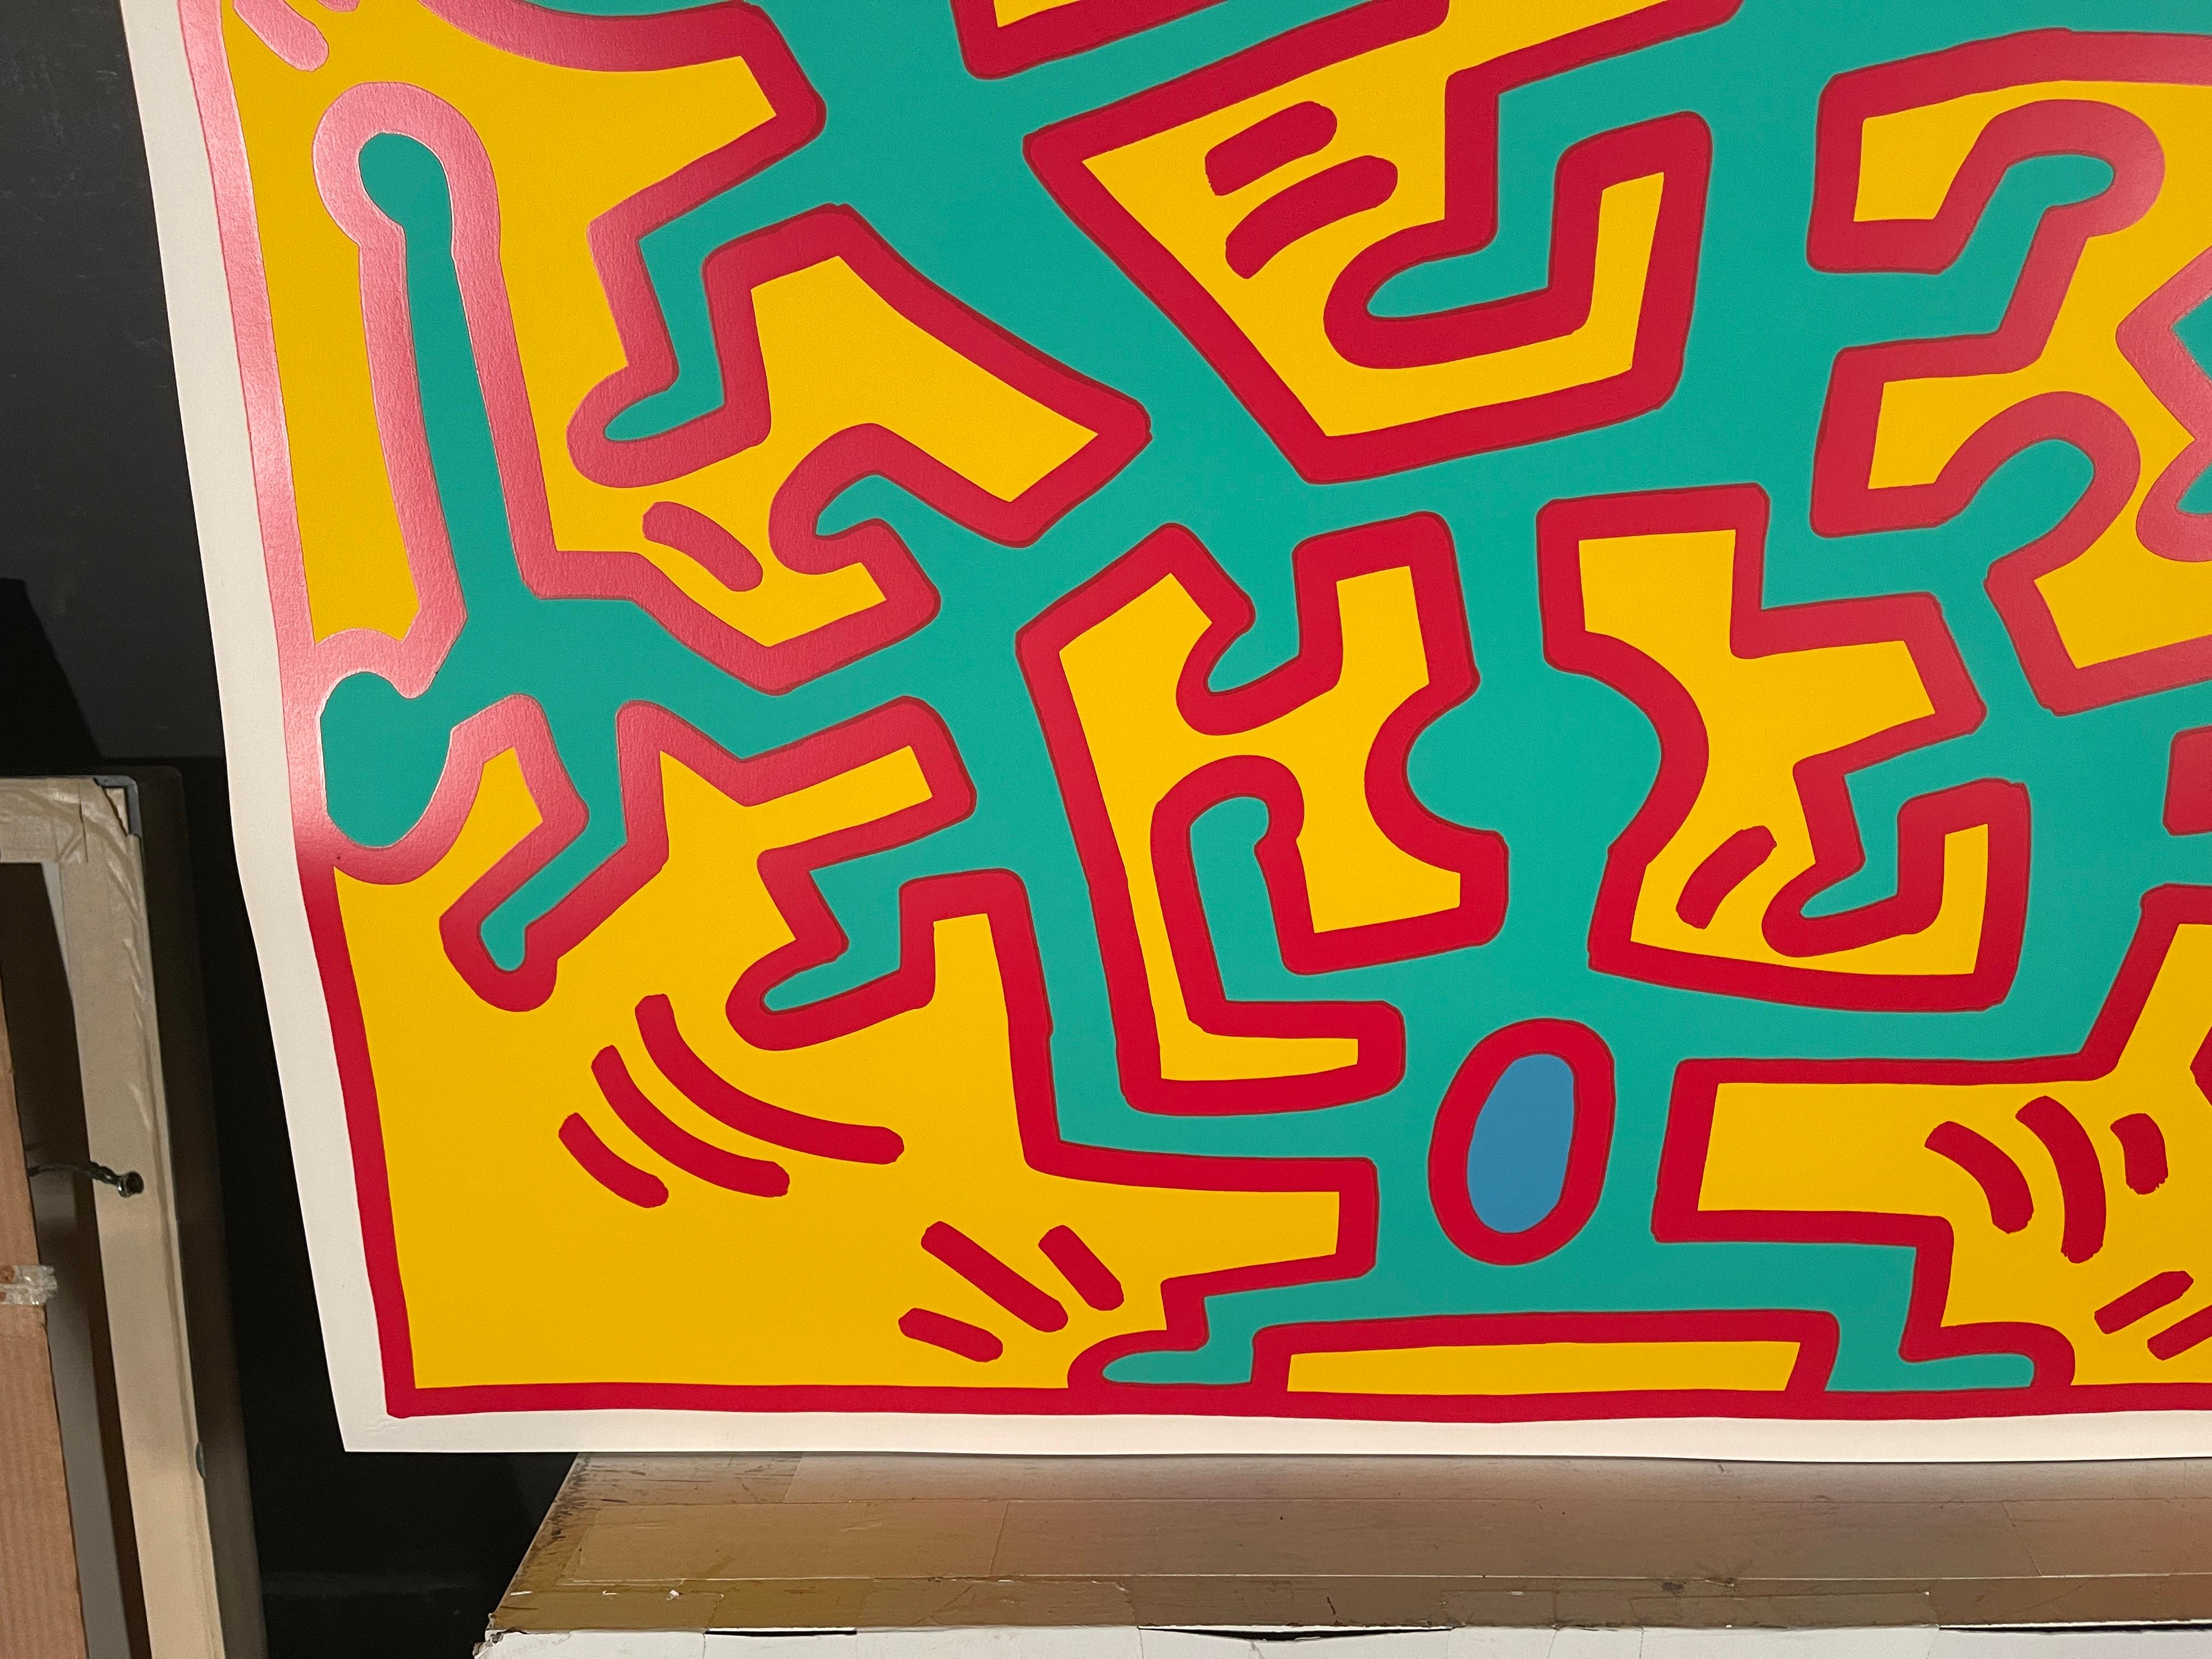 Handsigniert, nummeriert und datiert '88 in Bleistift auf der Vorderseite im unteren rechten Rand. Referenz Littman, K, & Haring K. Keith Haring, Editionen auf Papier 1982-1990: Das gesamte gedruckte Werk, Cantz, Stuttgart, 1997, S.90. Gedruckt von